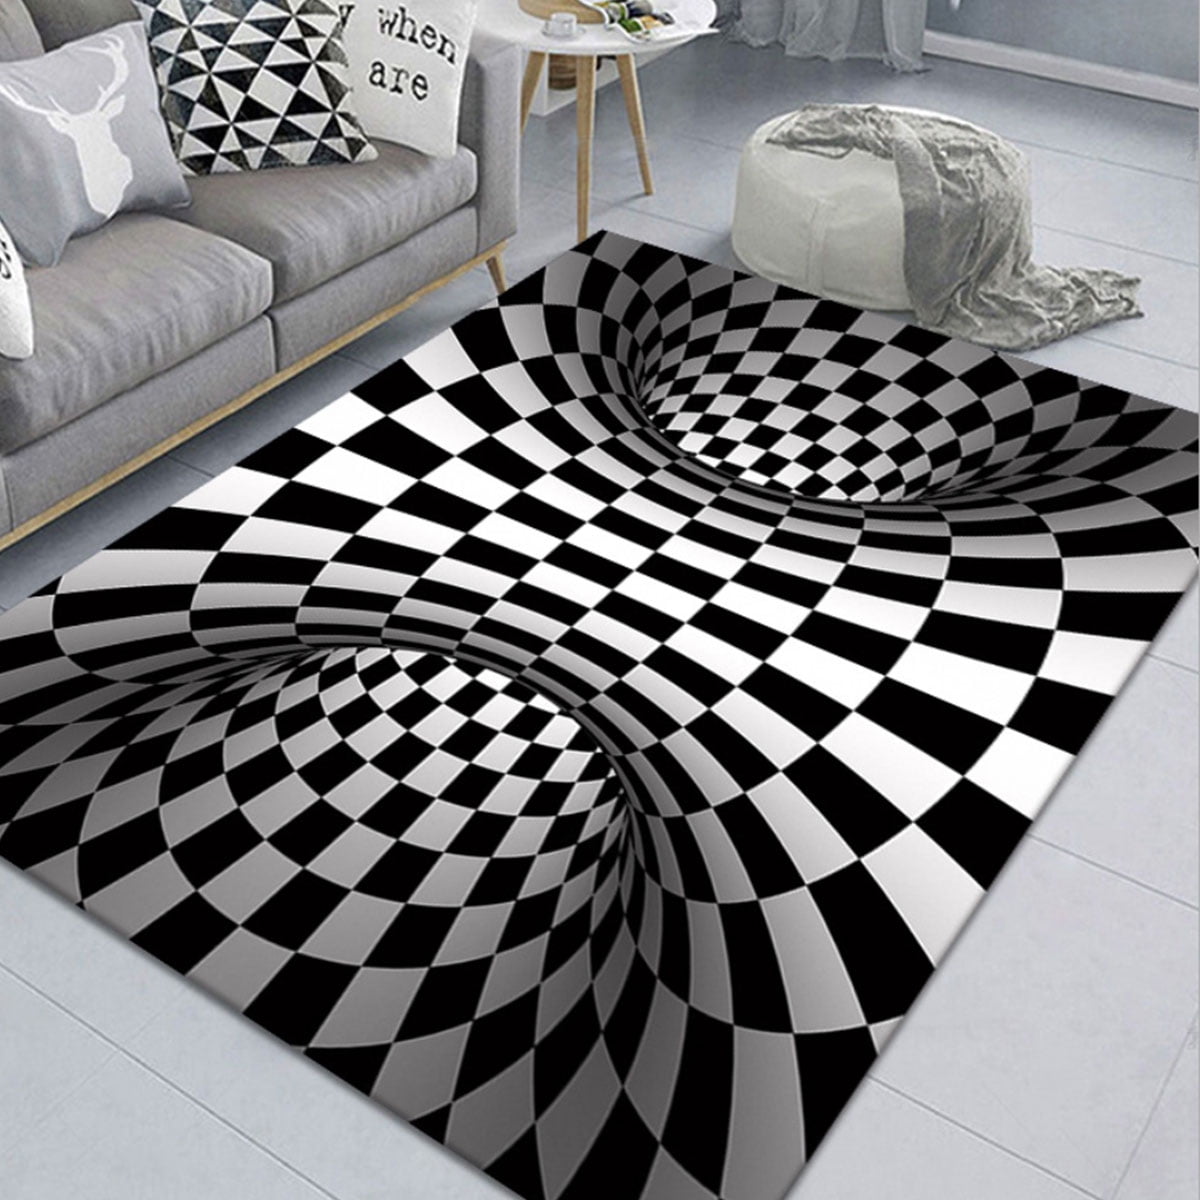 3D Printed Vortex Illusion Anti-slip Carpet Living Room Rugs Floor Door Home Mat 